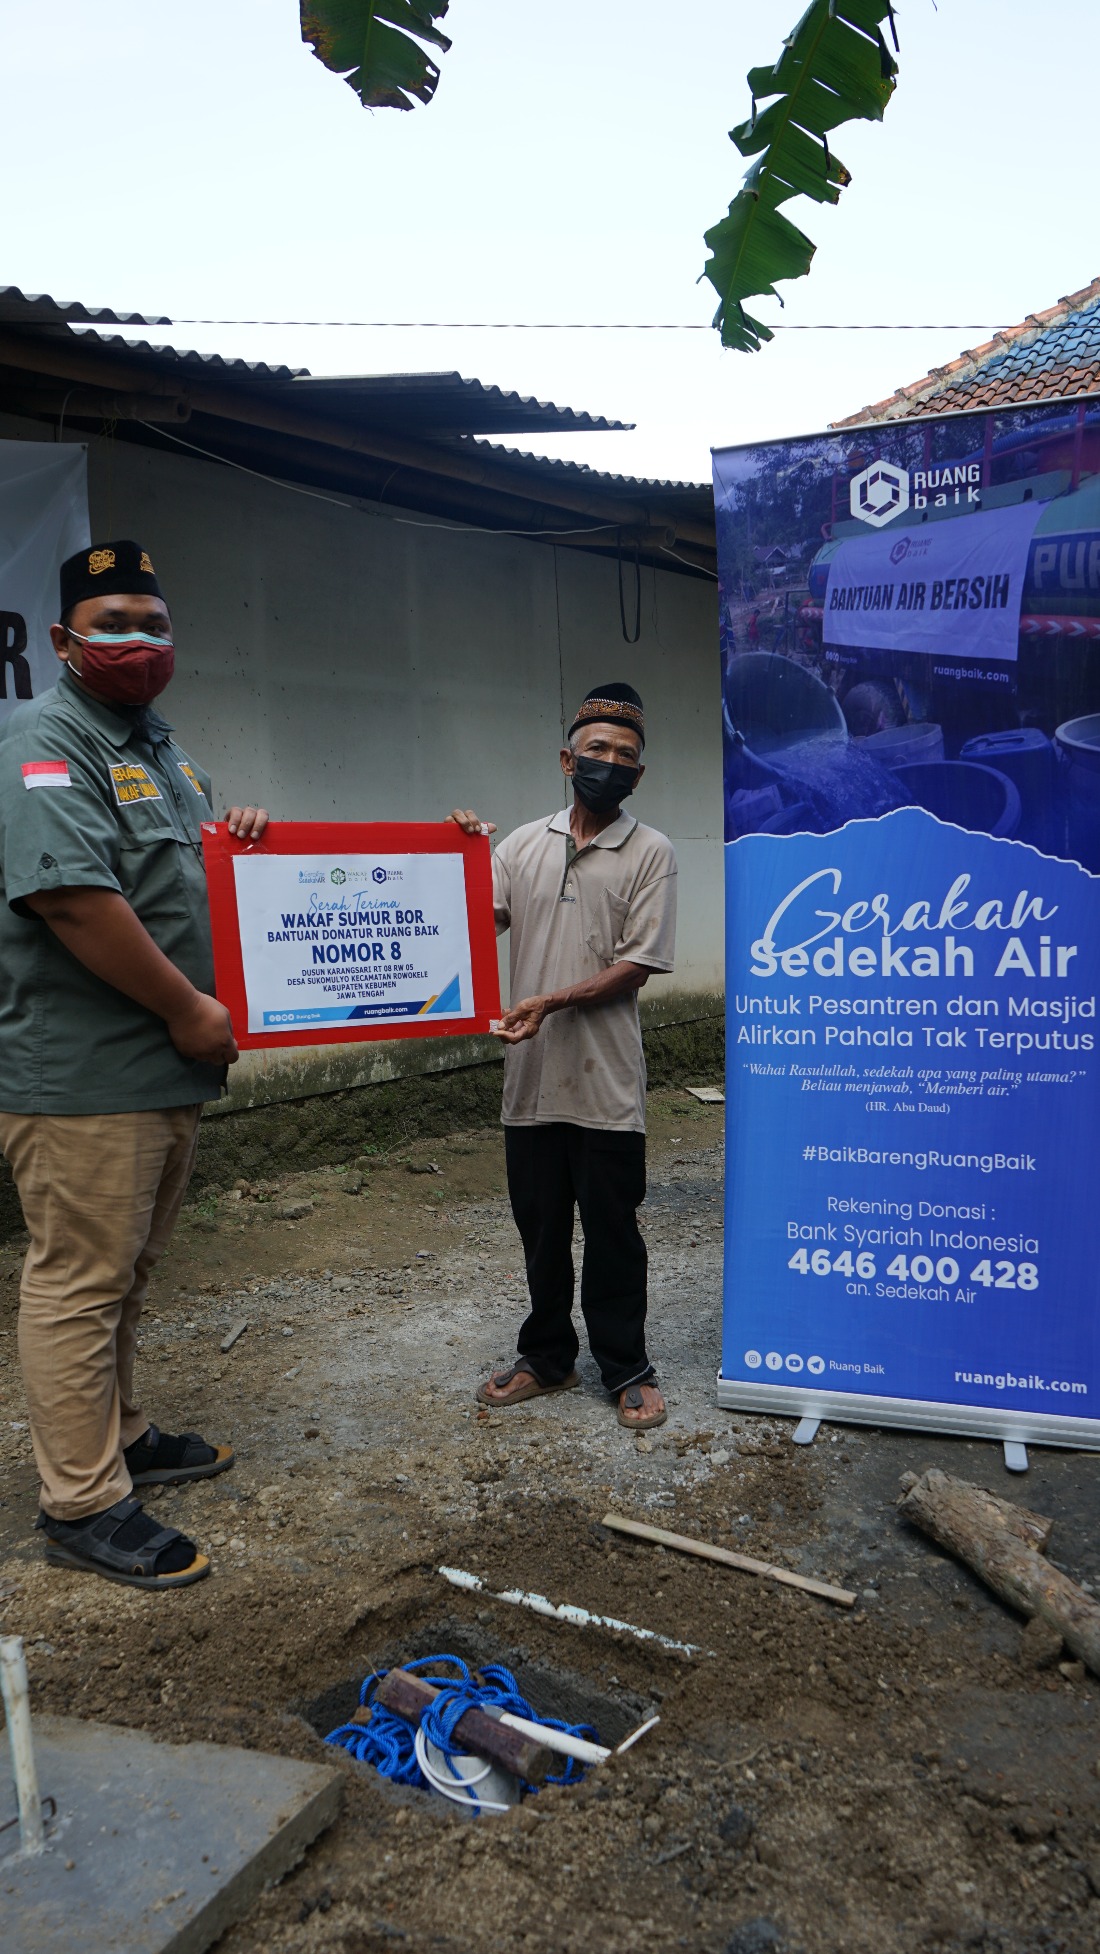 Sumur Bor No 8, Bantuan dari Donatur Ruang Baik untuk Mushola At Taubah yang berada di Dusun Karangsari RT 08 RW 05 Desa Sukomulyo Kecamatan Rowokele Kabupaten Kebumen, Jawa Tengah